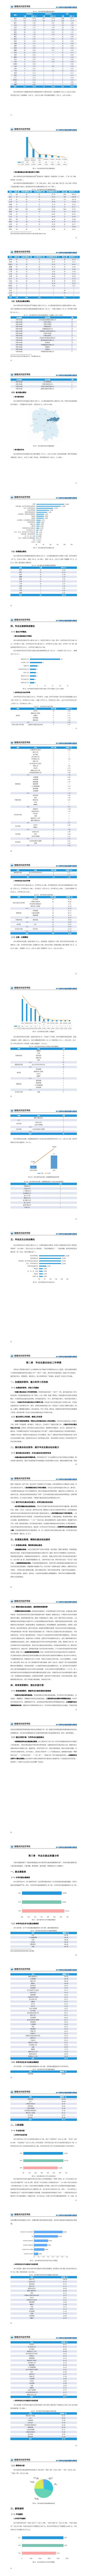 湖南涉外经济学院2019届毕业生就业质量年度报告0103(1)_1.jpg